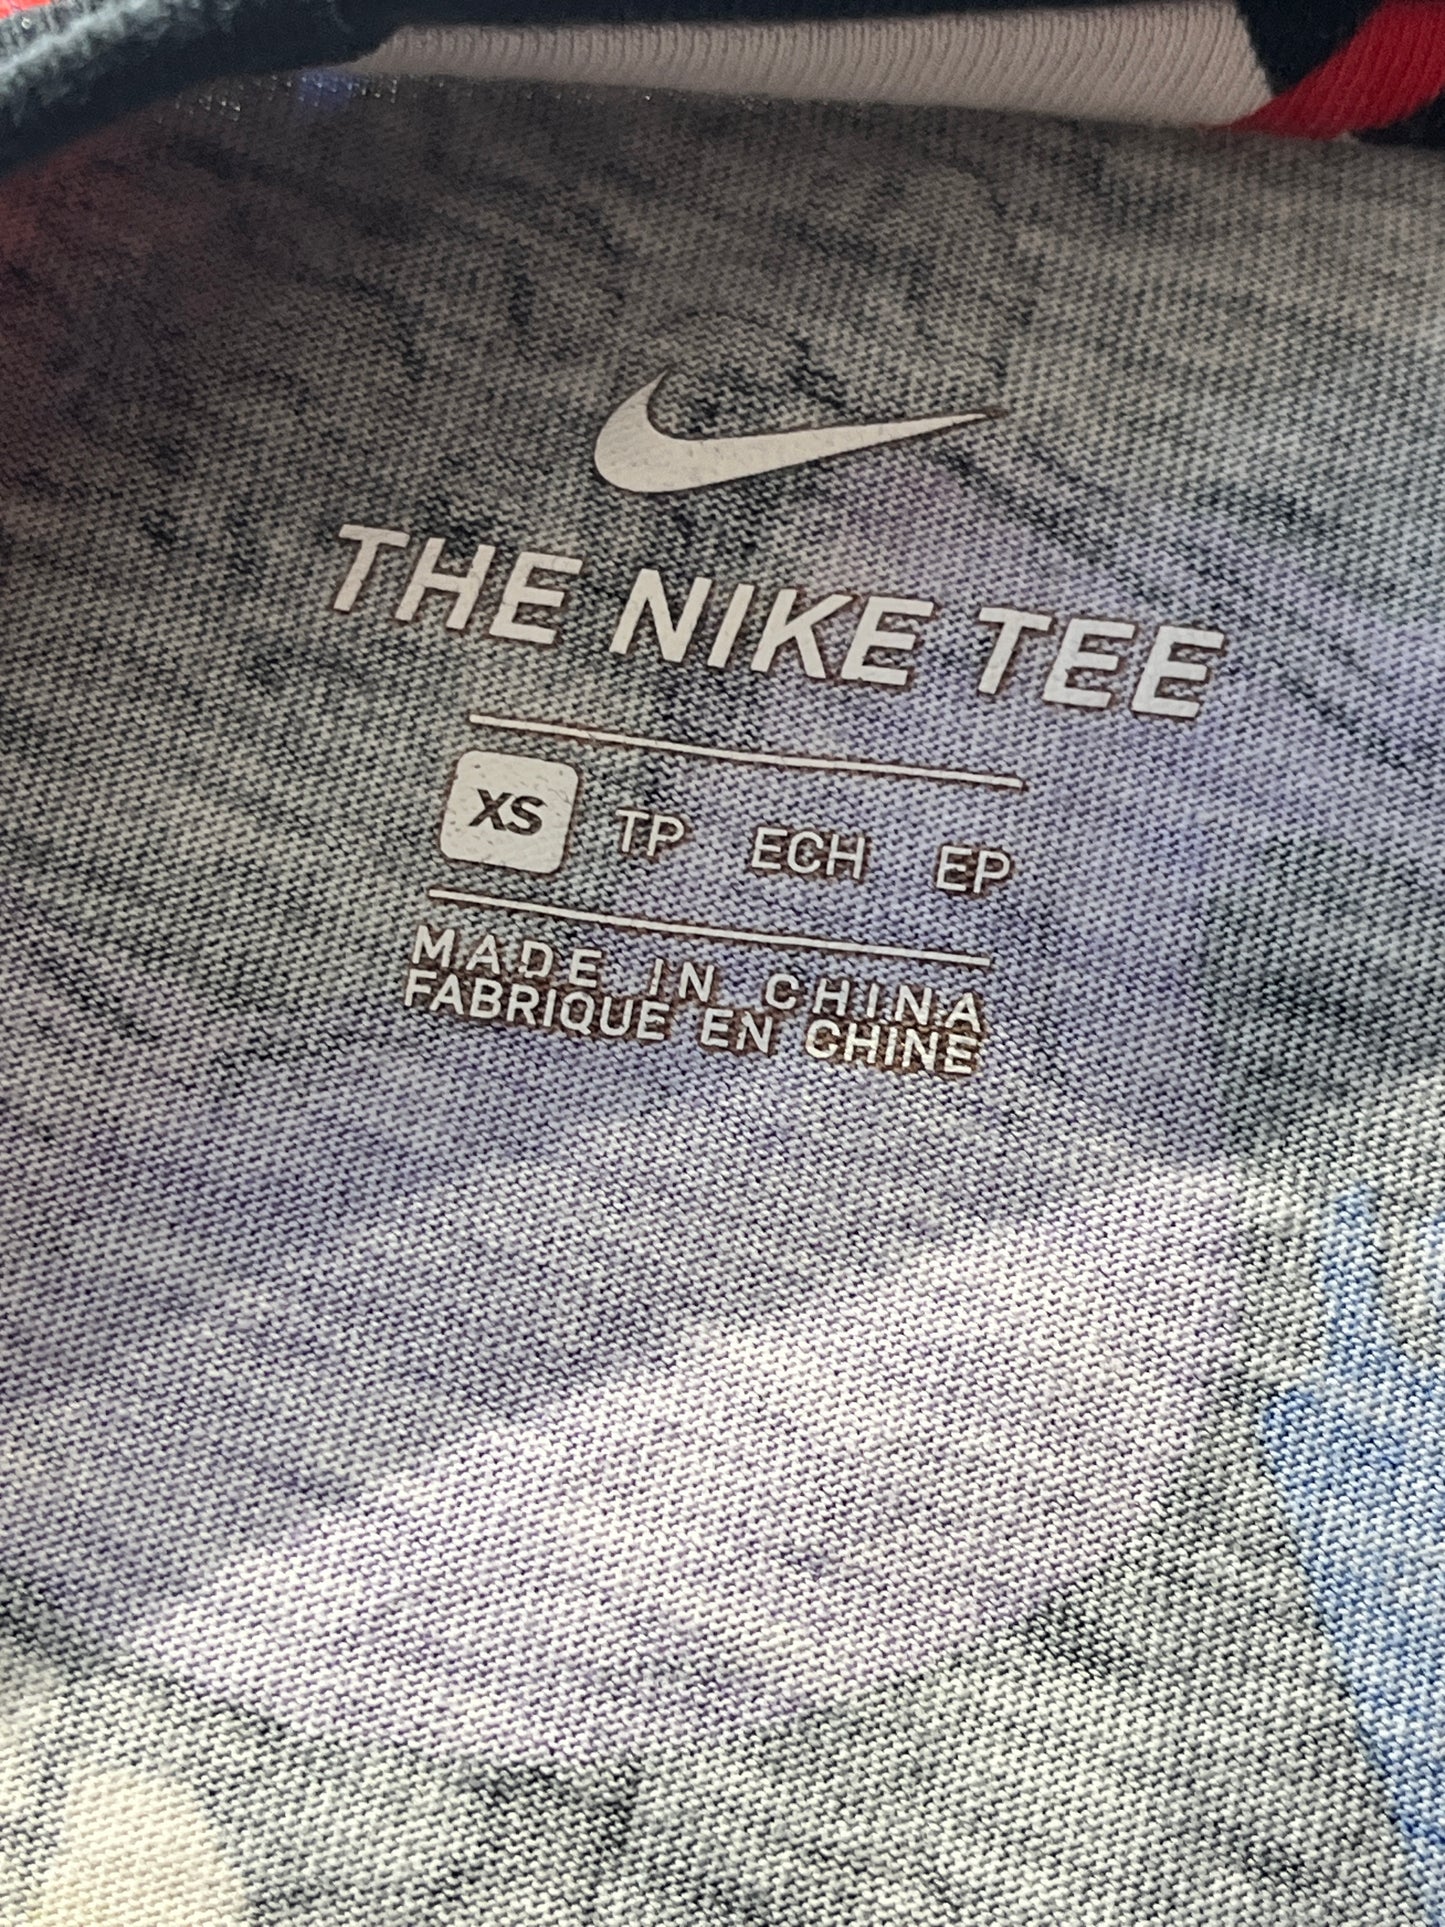 Vintage Nike Air Crop Top T-Shirt